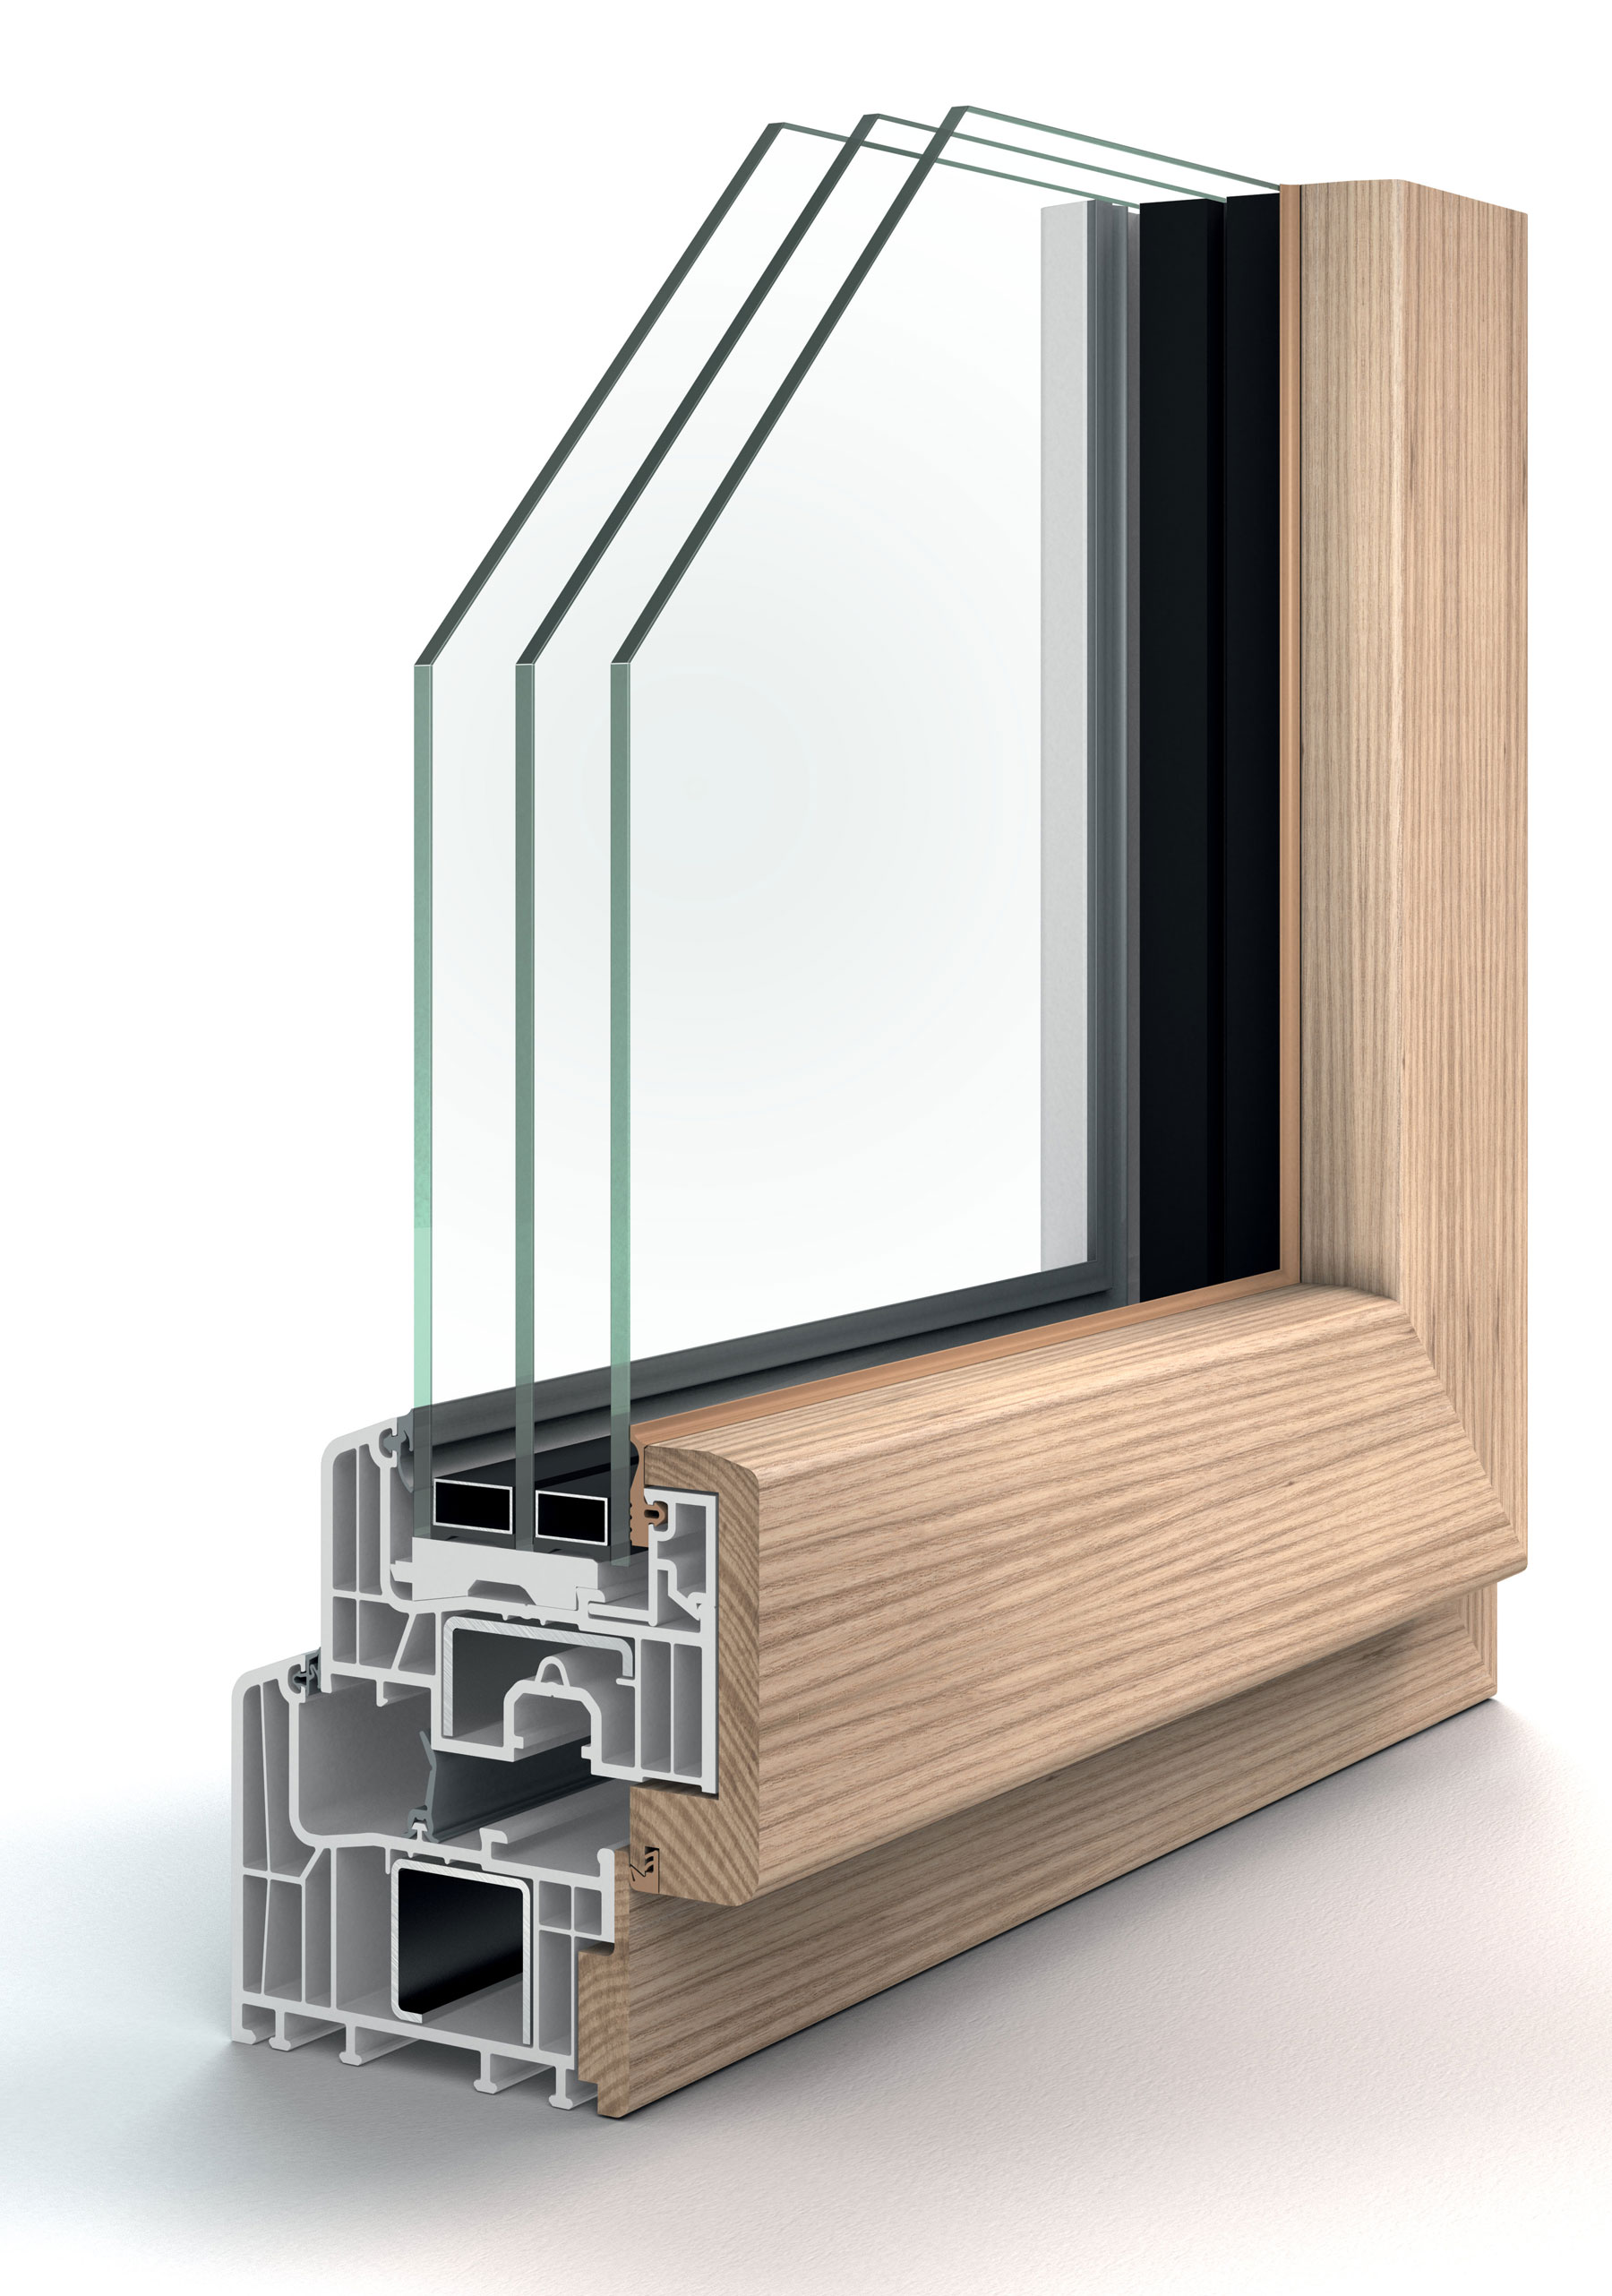 Na vnútornú stranuEforteFusion možno použiť aj také typy dreva, ktoré sa na výrobu drevených a drevohliníkových okien bežne nepoužívajú, ako je napríklad javor, jaseň alebo buk.